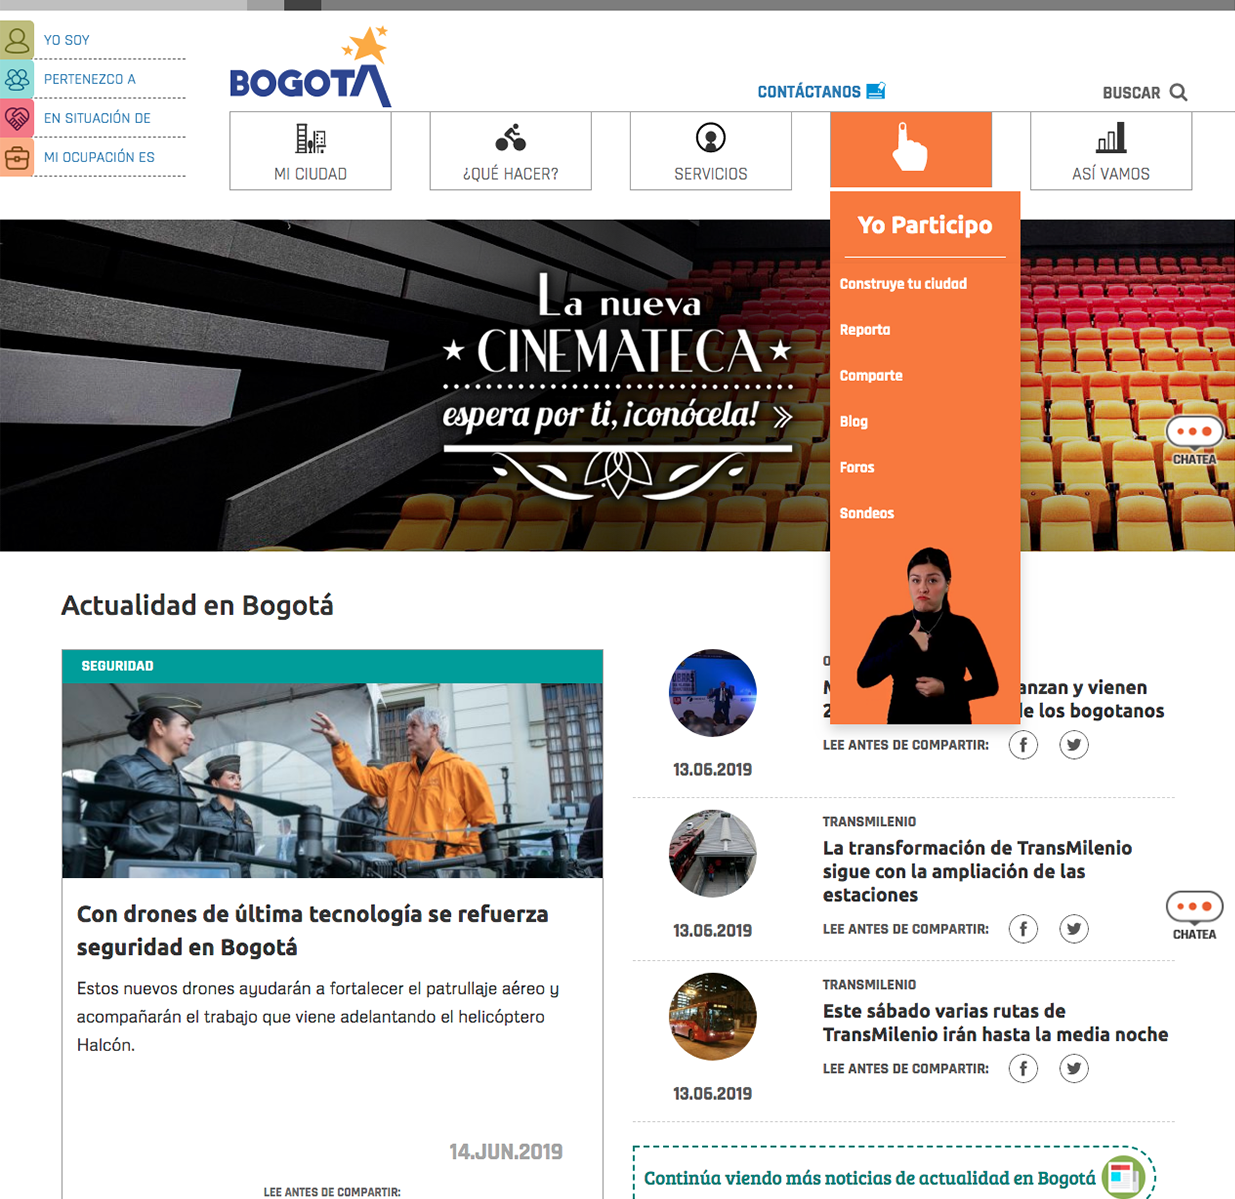 Bogota's city official website image